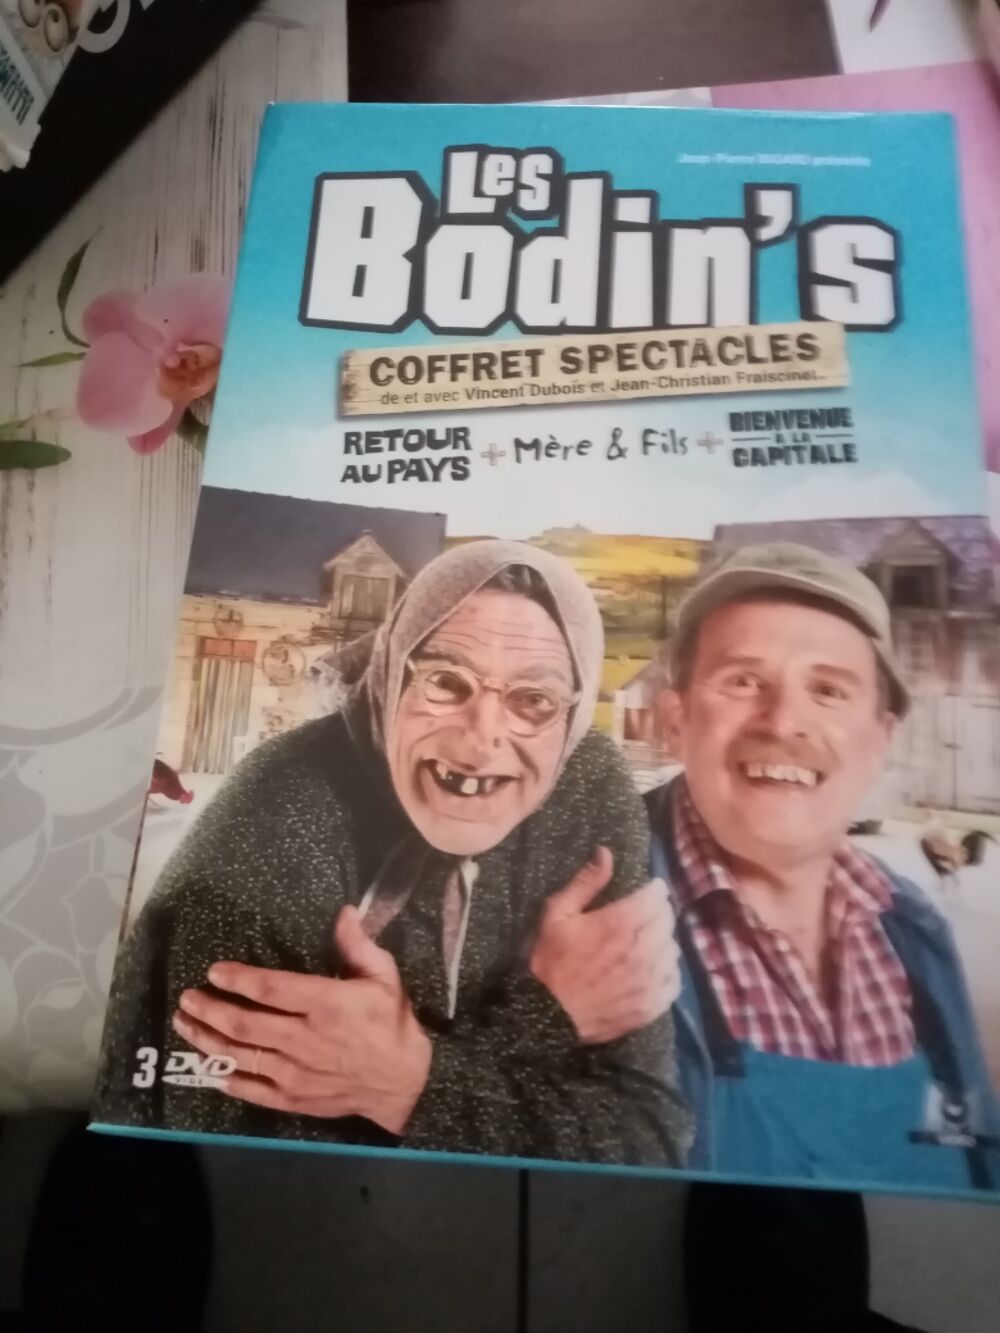 Coffret DVD Les Bodins DVD et blu-ray